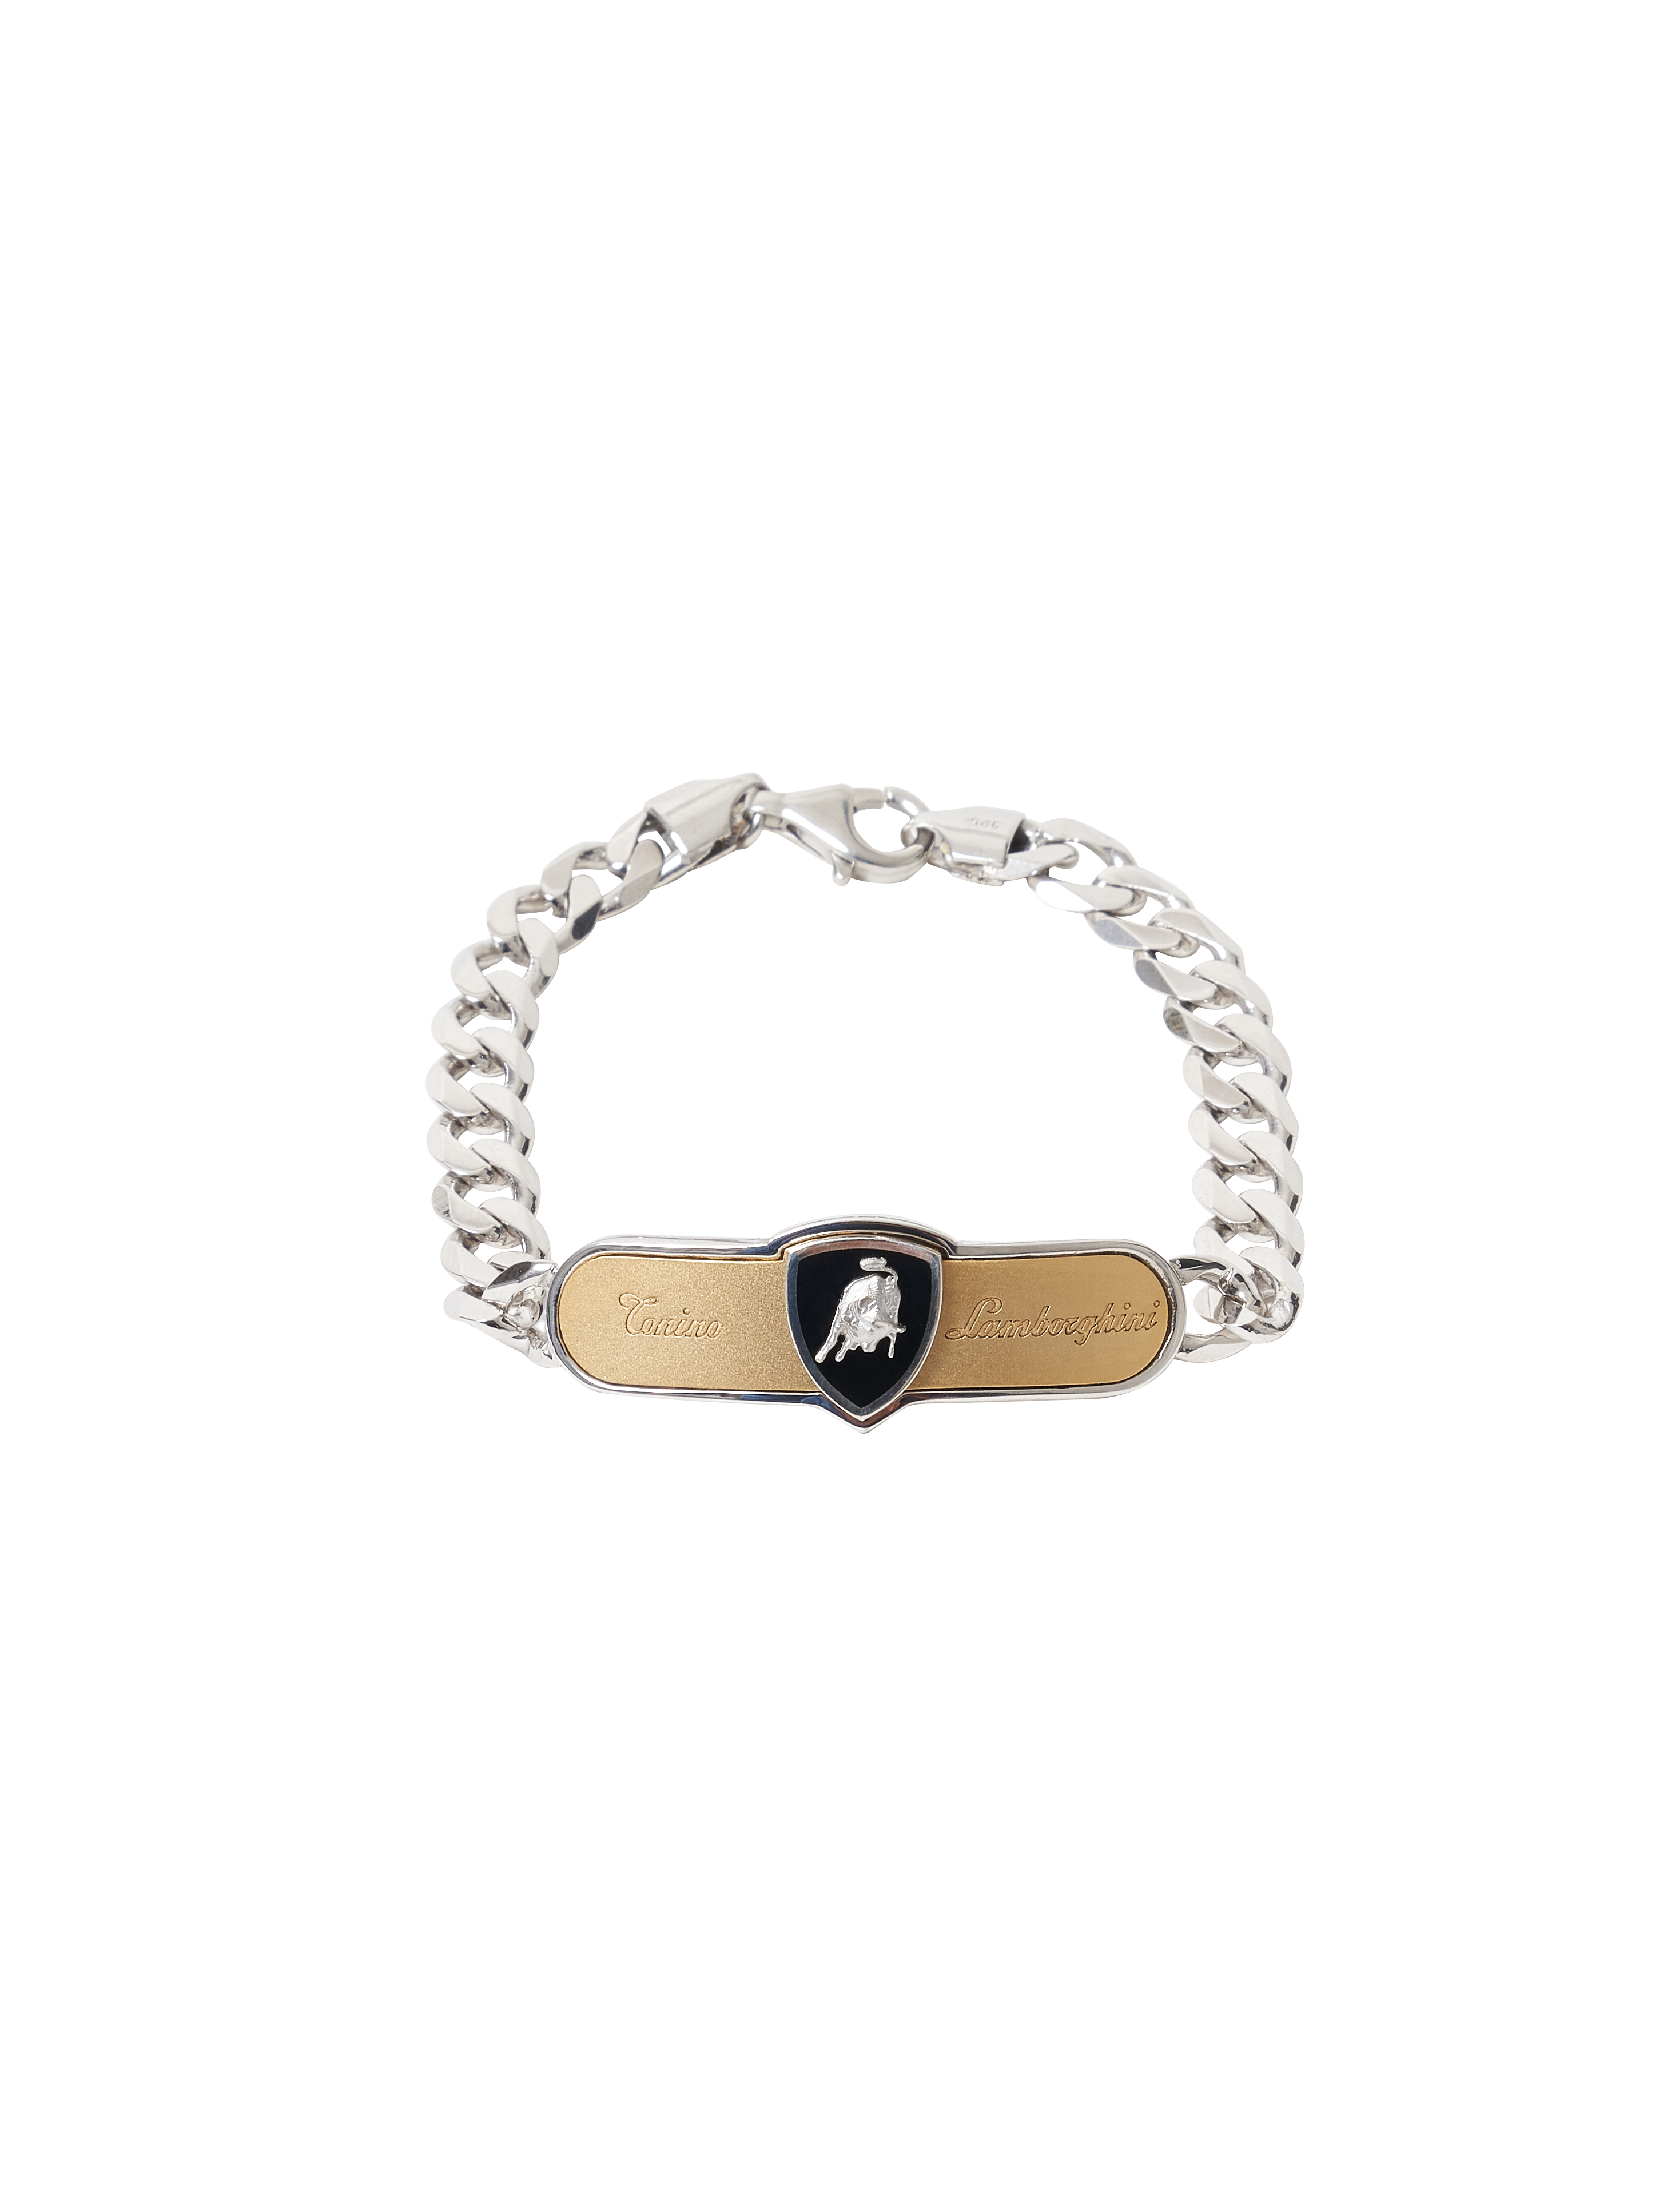 Curb Chain Bracelet - 20 cm